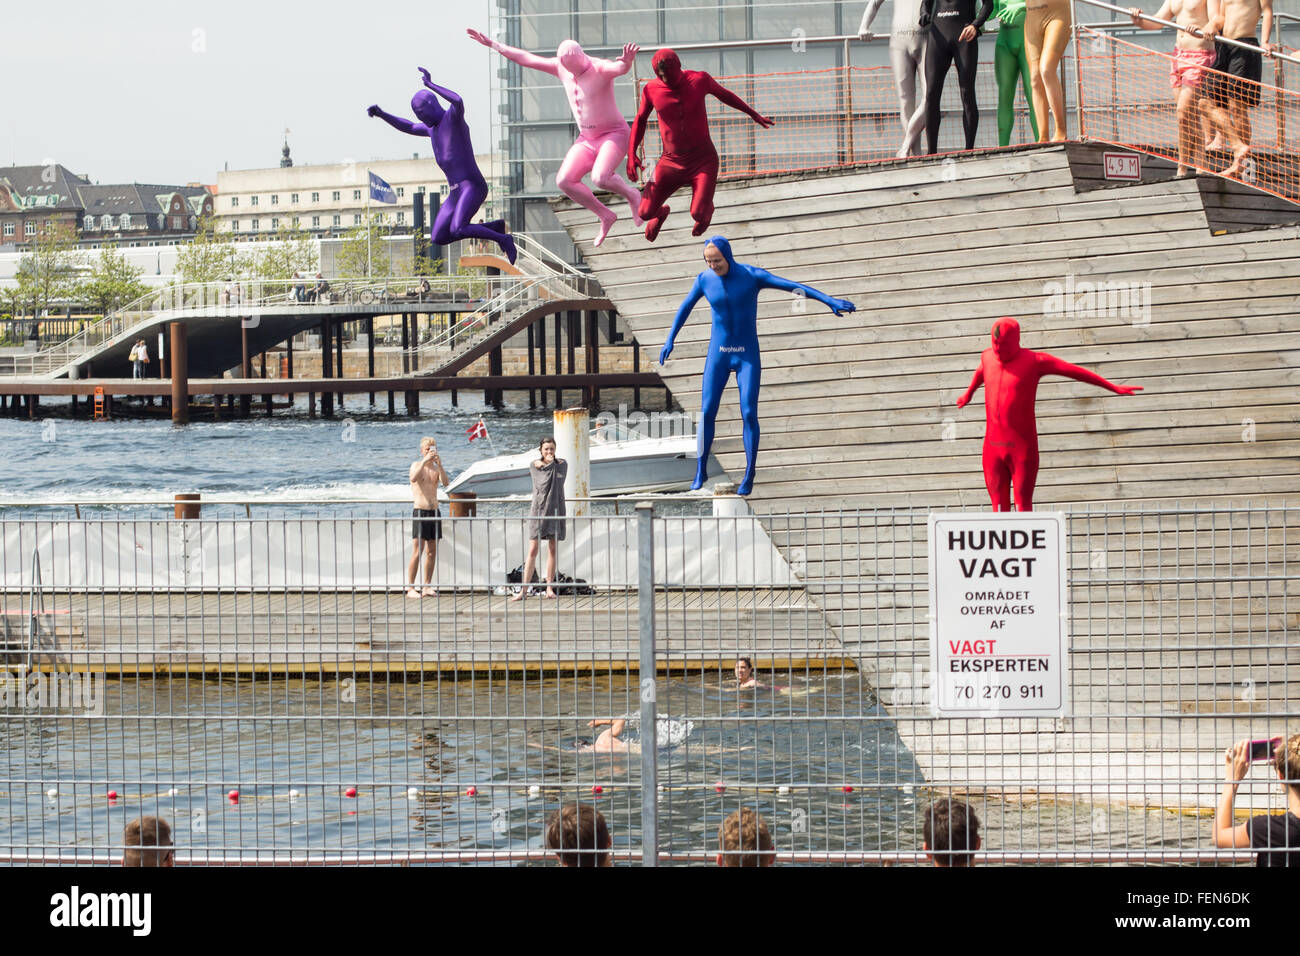 Copenhague, Danemark - Juin 13th, 2015 : un groupe d'adultes sont costumés de sauter dans une piscine construire sur le canal principal de Copenhague, Banque D'Images